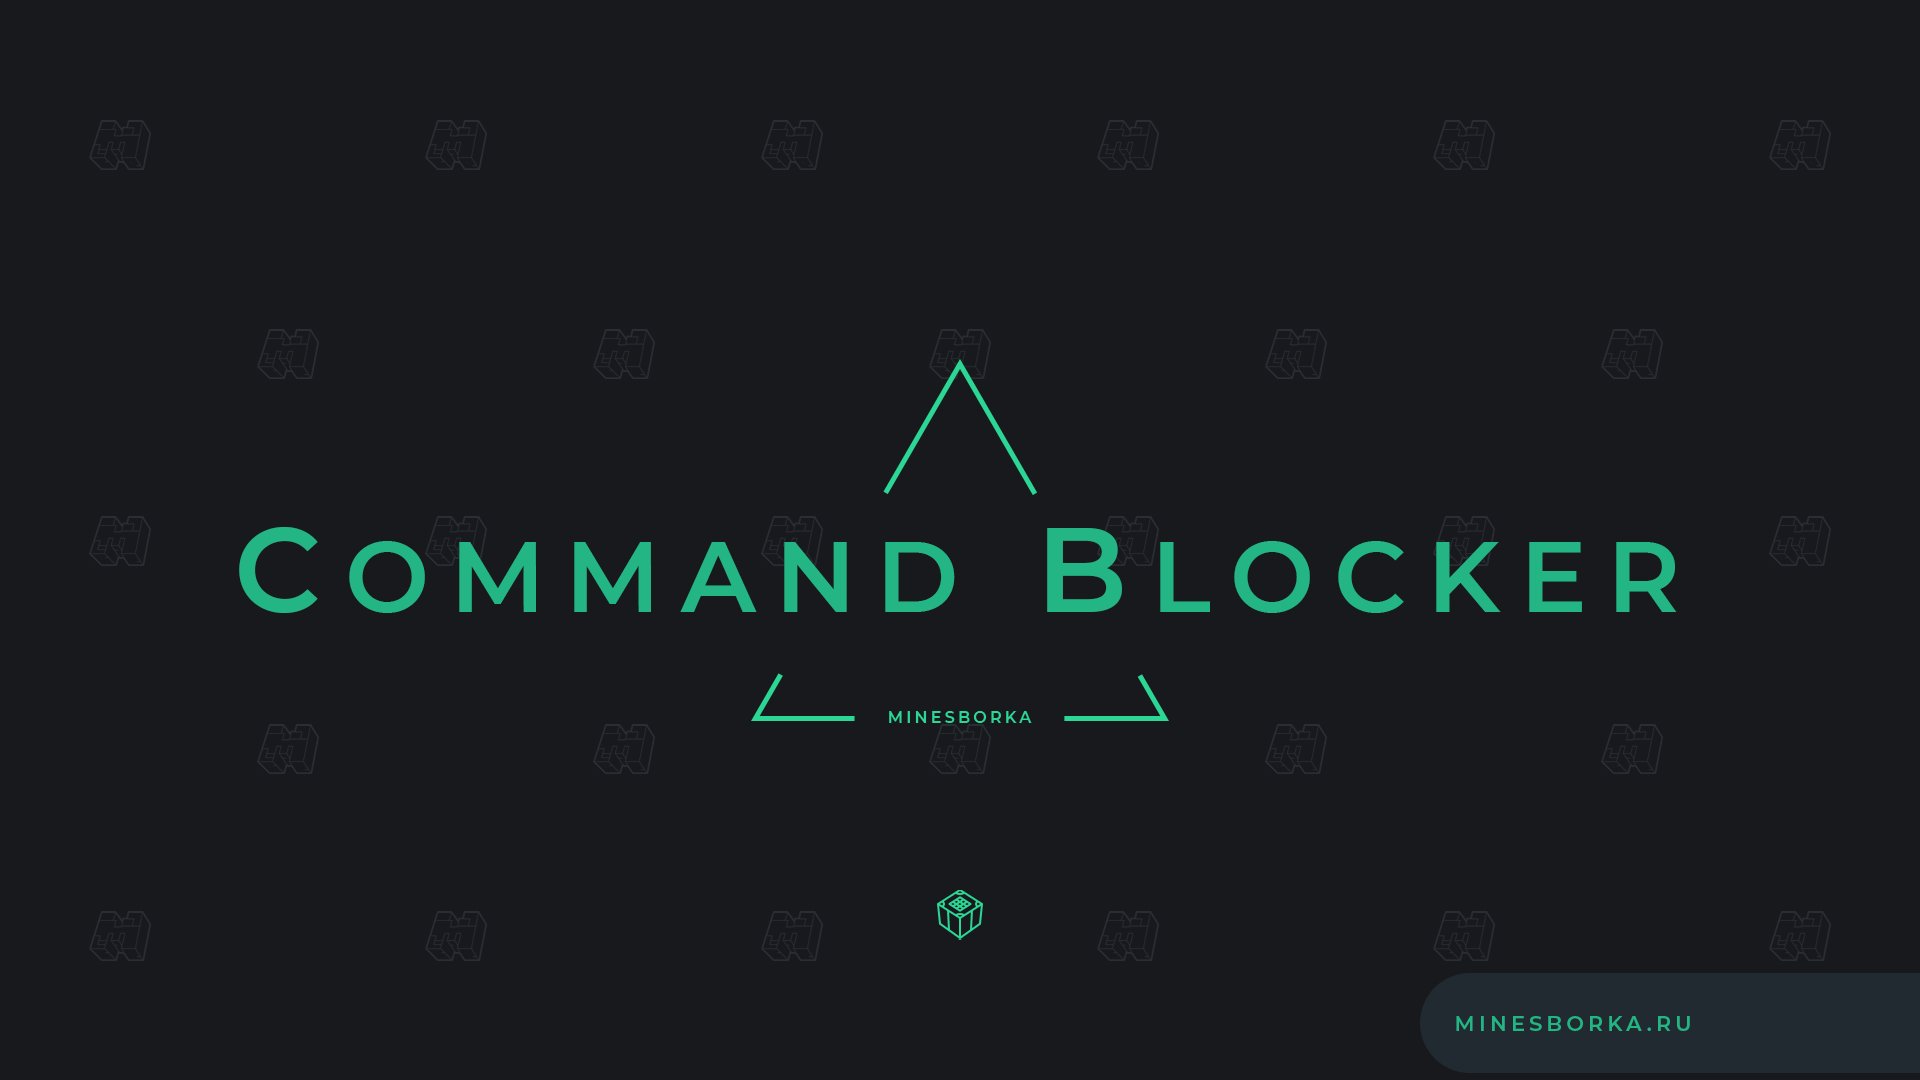 Скачать плагин Command Blocker | Как заблокировать команду на сервере Майнкрафт